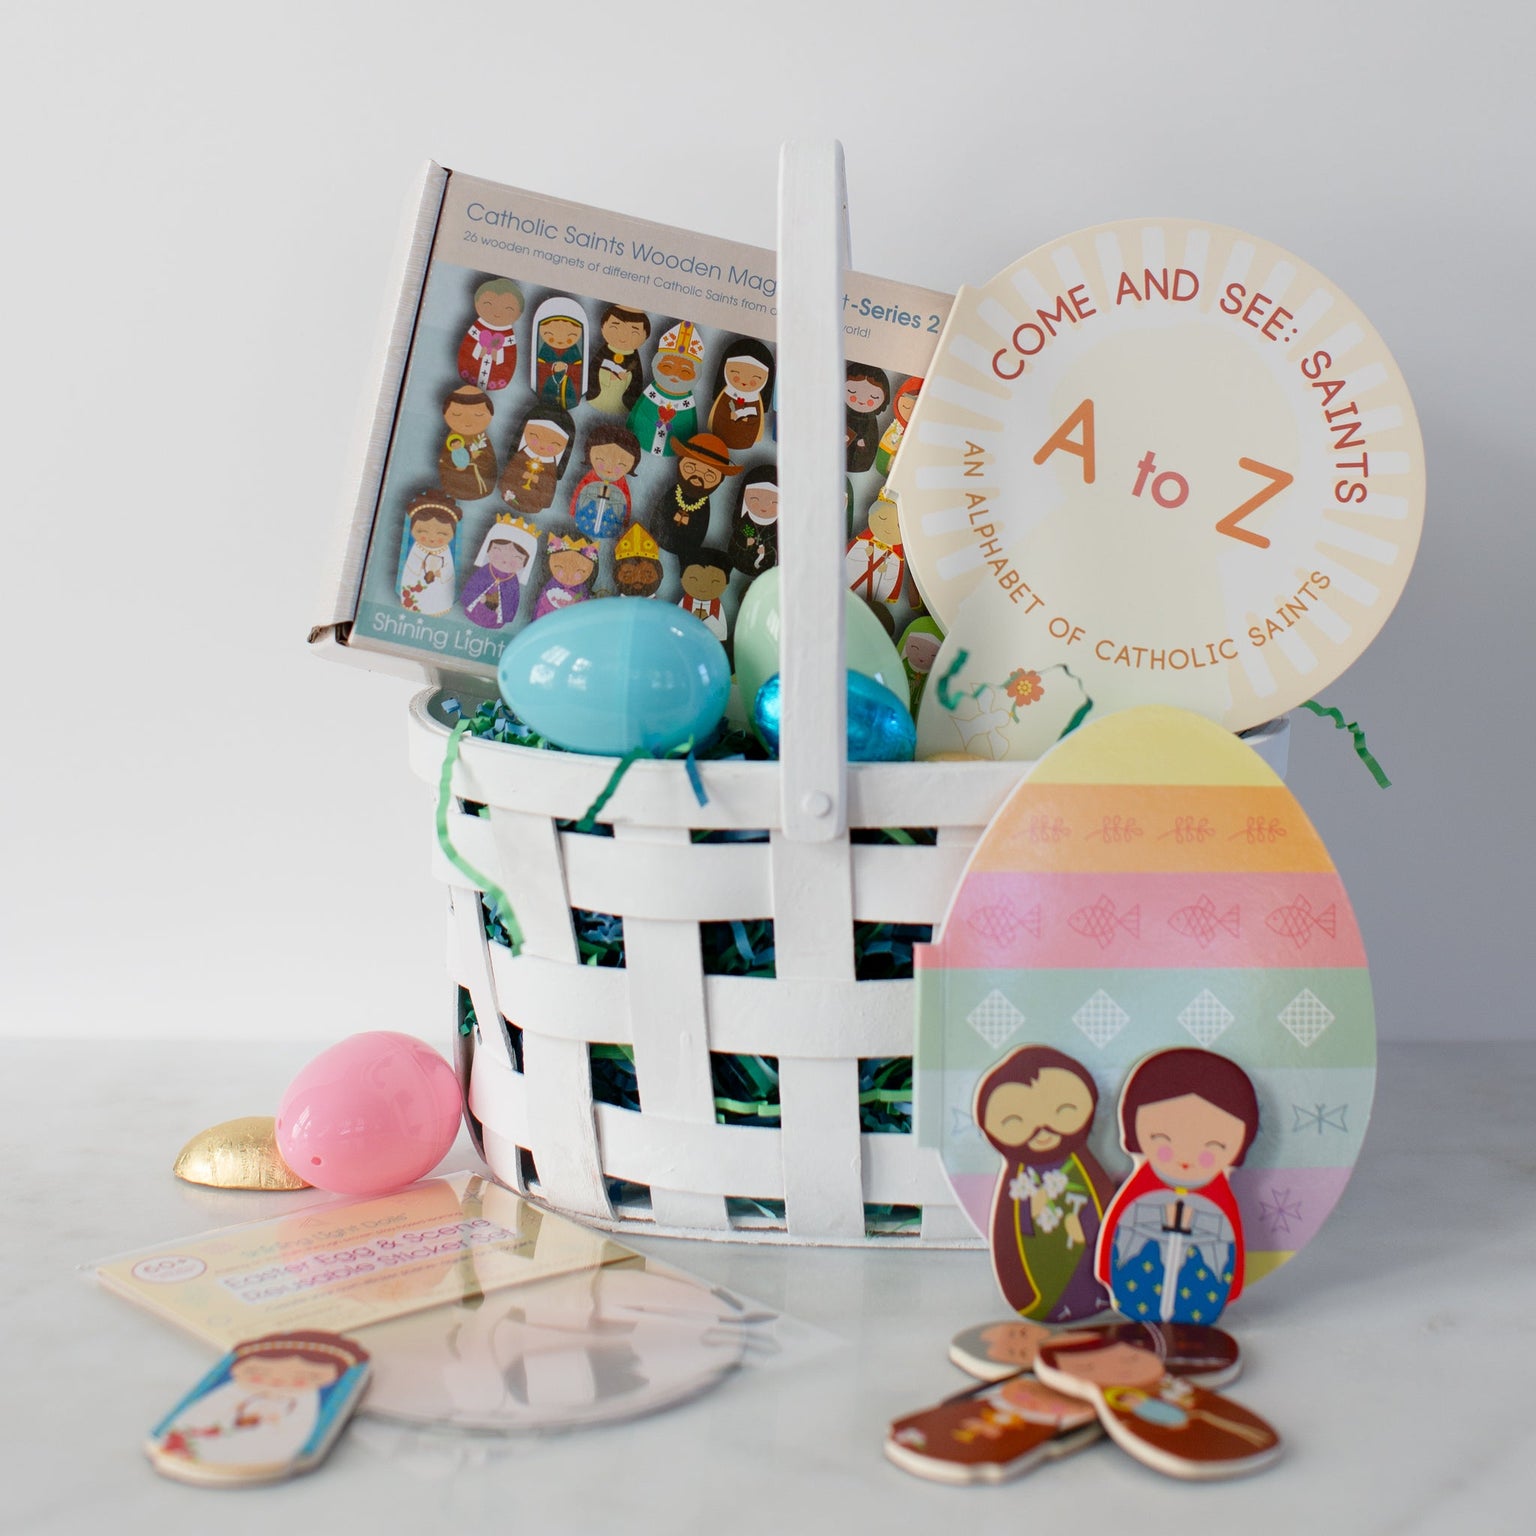 Easter Egg & Scene Reusable Sticker Set